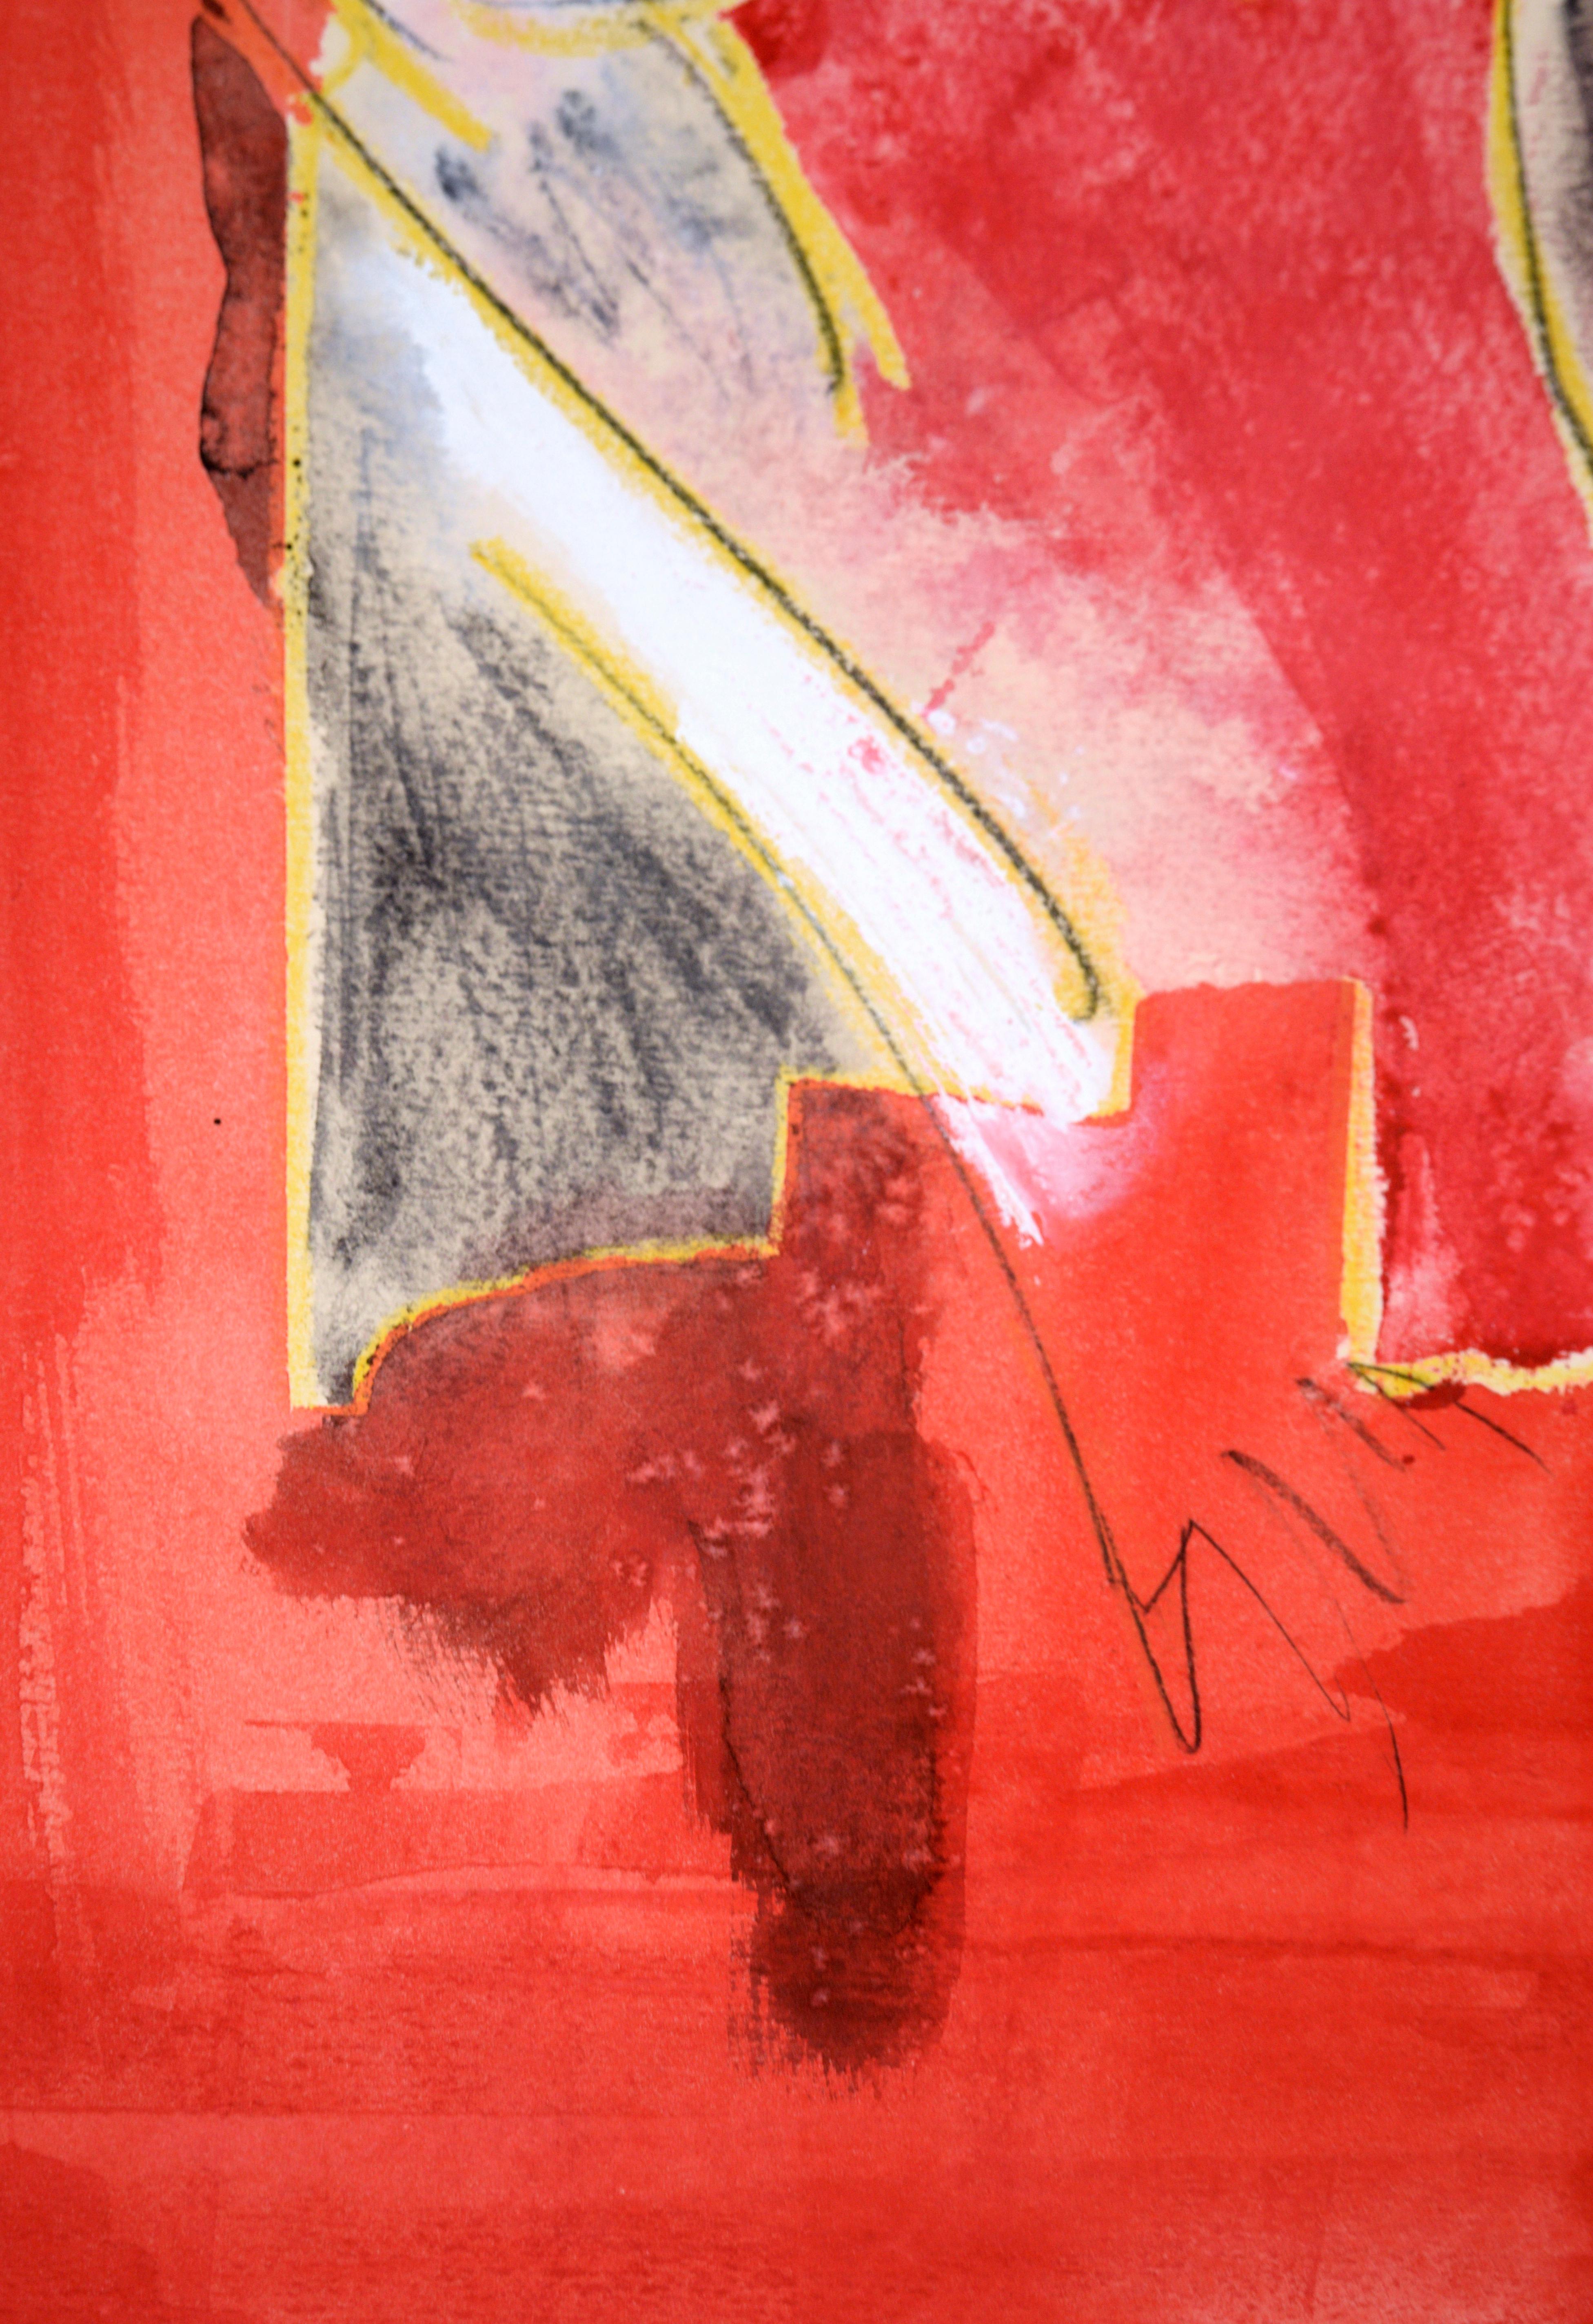 Roter Mieder abstrakter Akt 

Ein lebhaftes abstraktes Gemälde in Rottönen mit kanariengelben Akzenten und grauem Hintergrund des in Kalifornien lebenden Künstlers Ricardo de Silva (Amerikaner/Brasilianer, 20. C.). Die Unterschrift in der linken